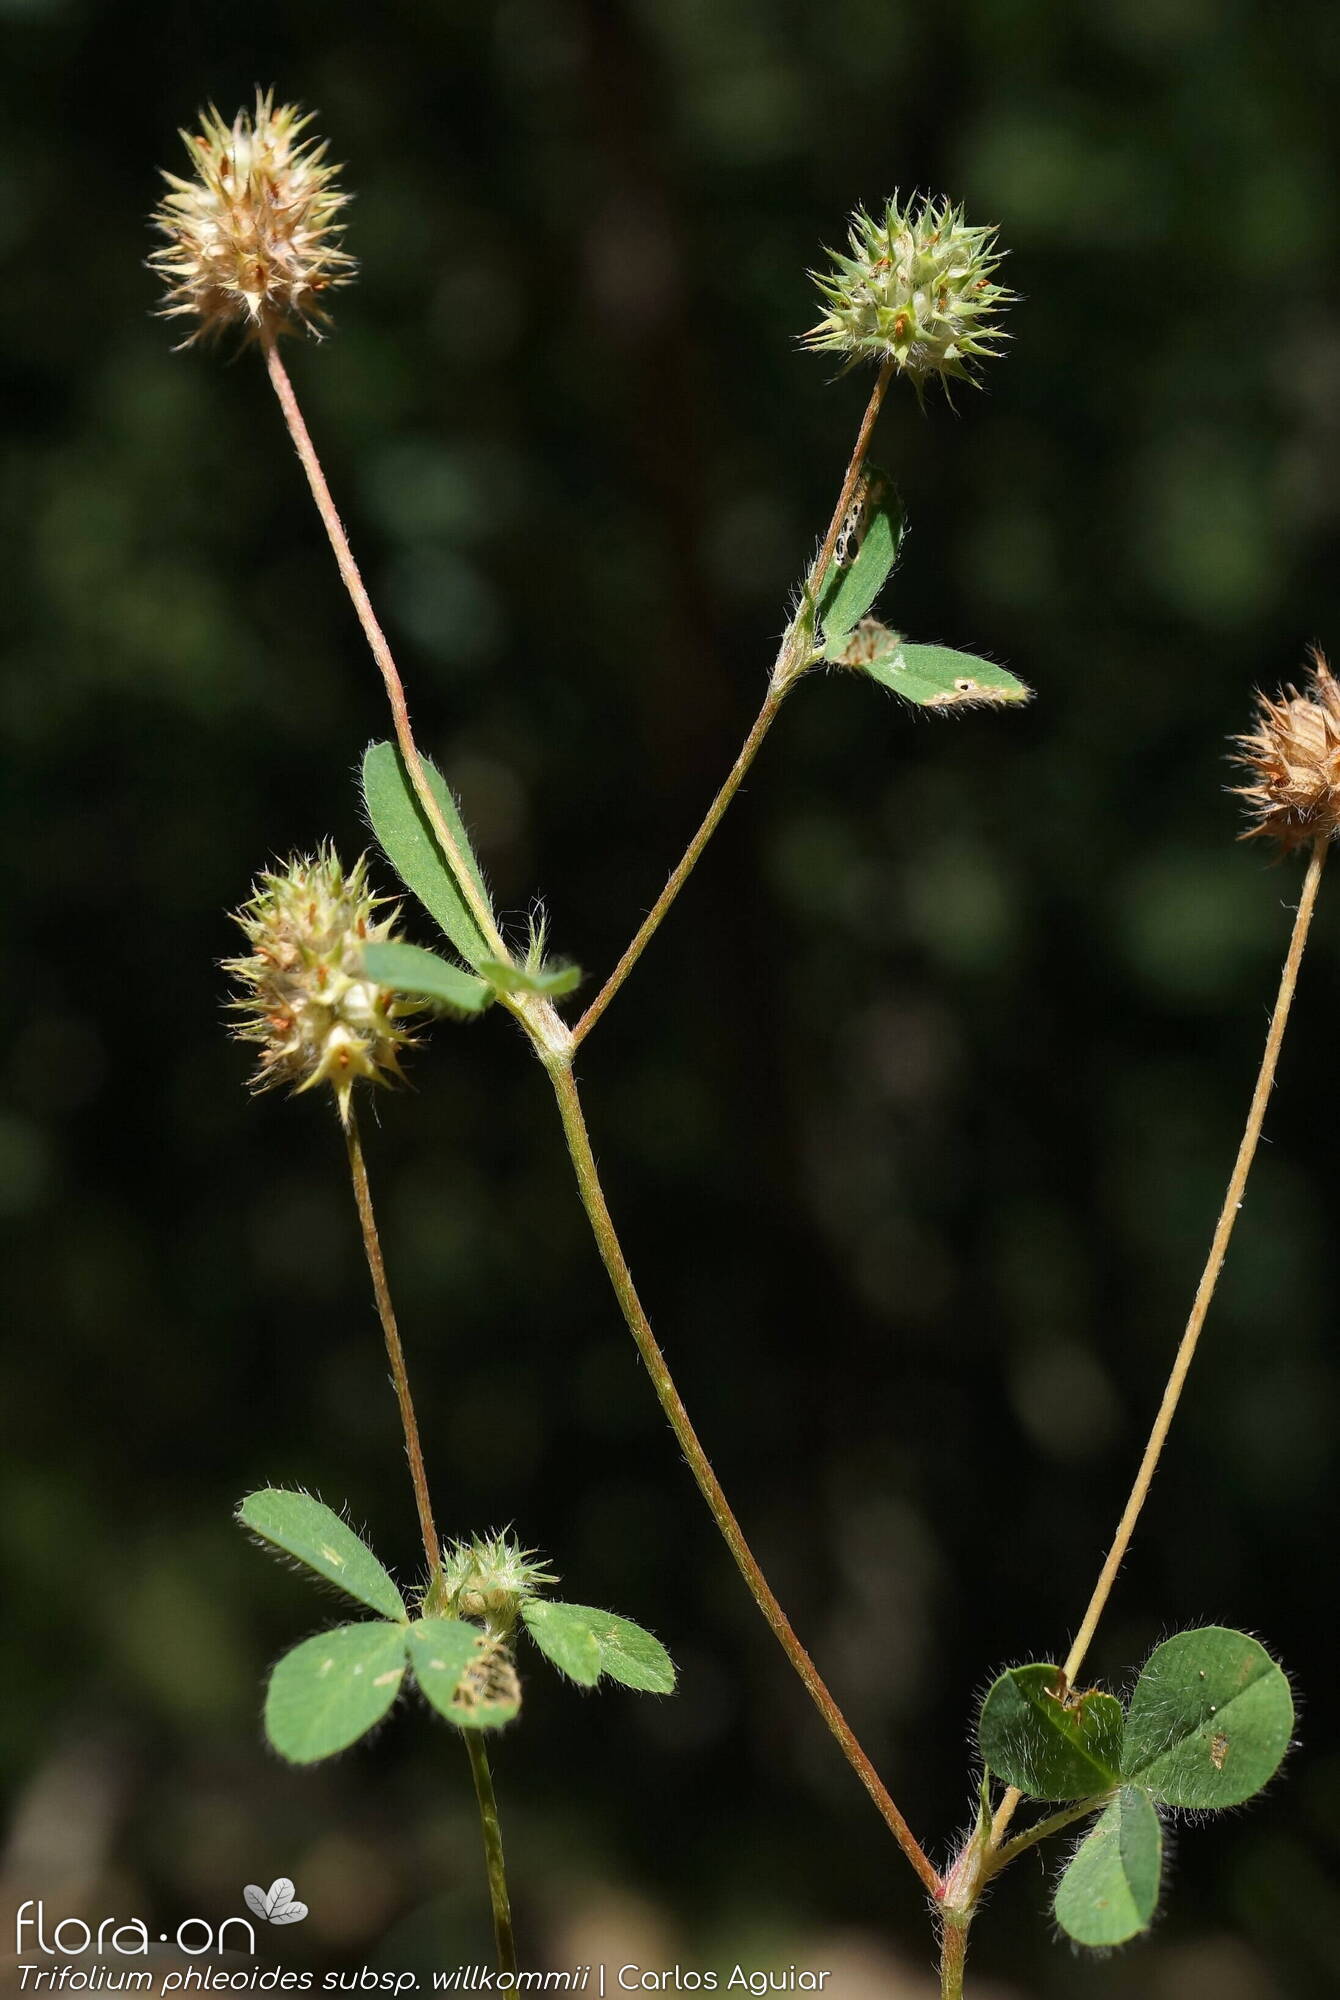 Trifolium phleoides willkommii - Flor (geral) | Carlos Aguiar; CC BY-NC 4.0